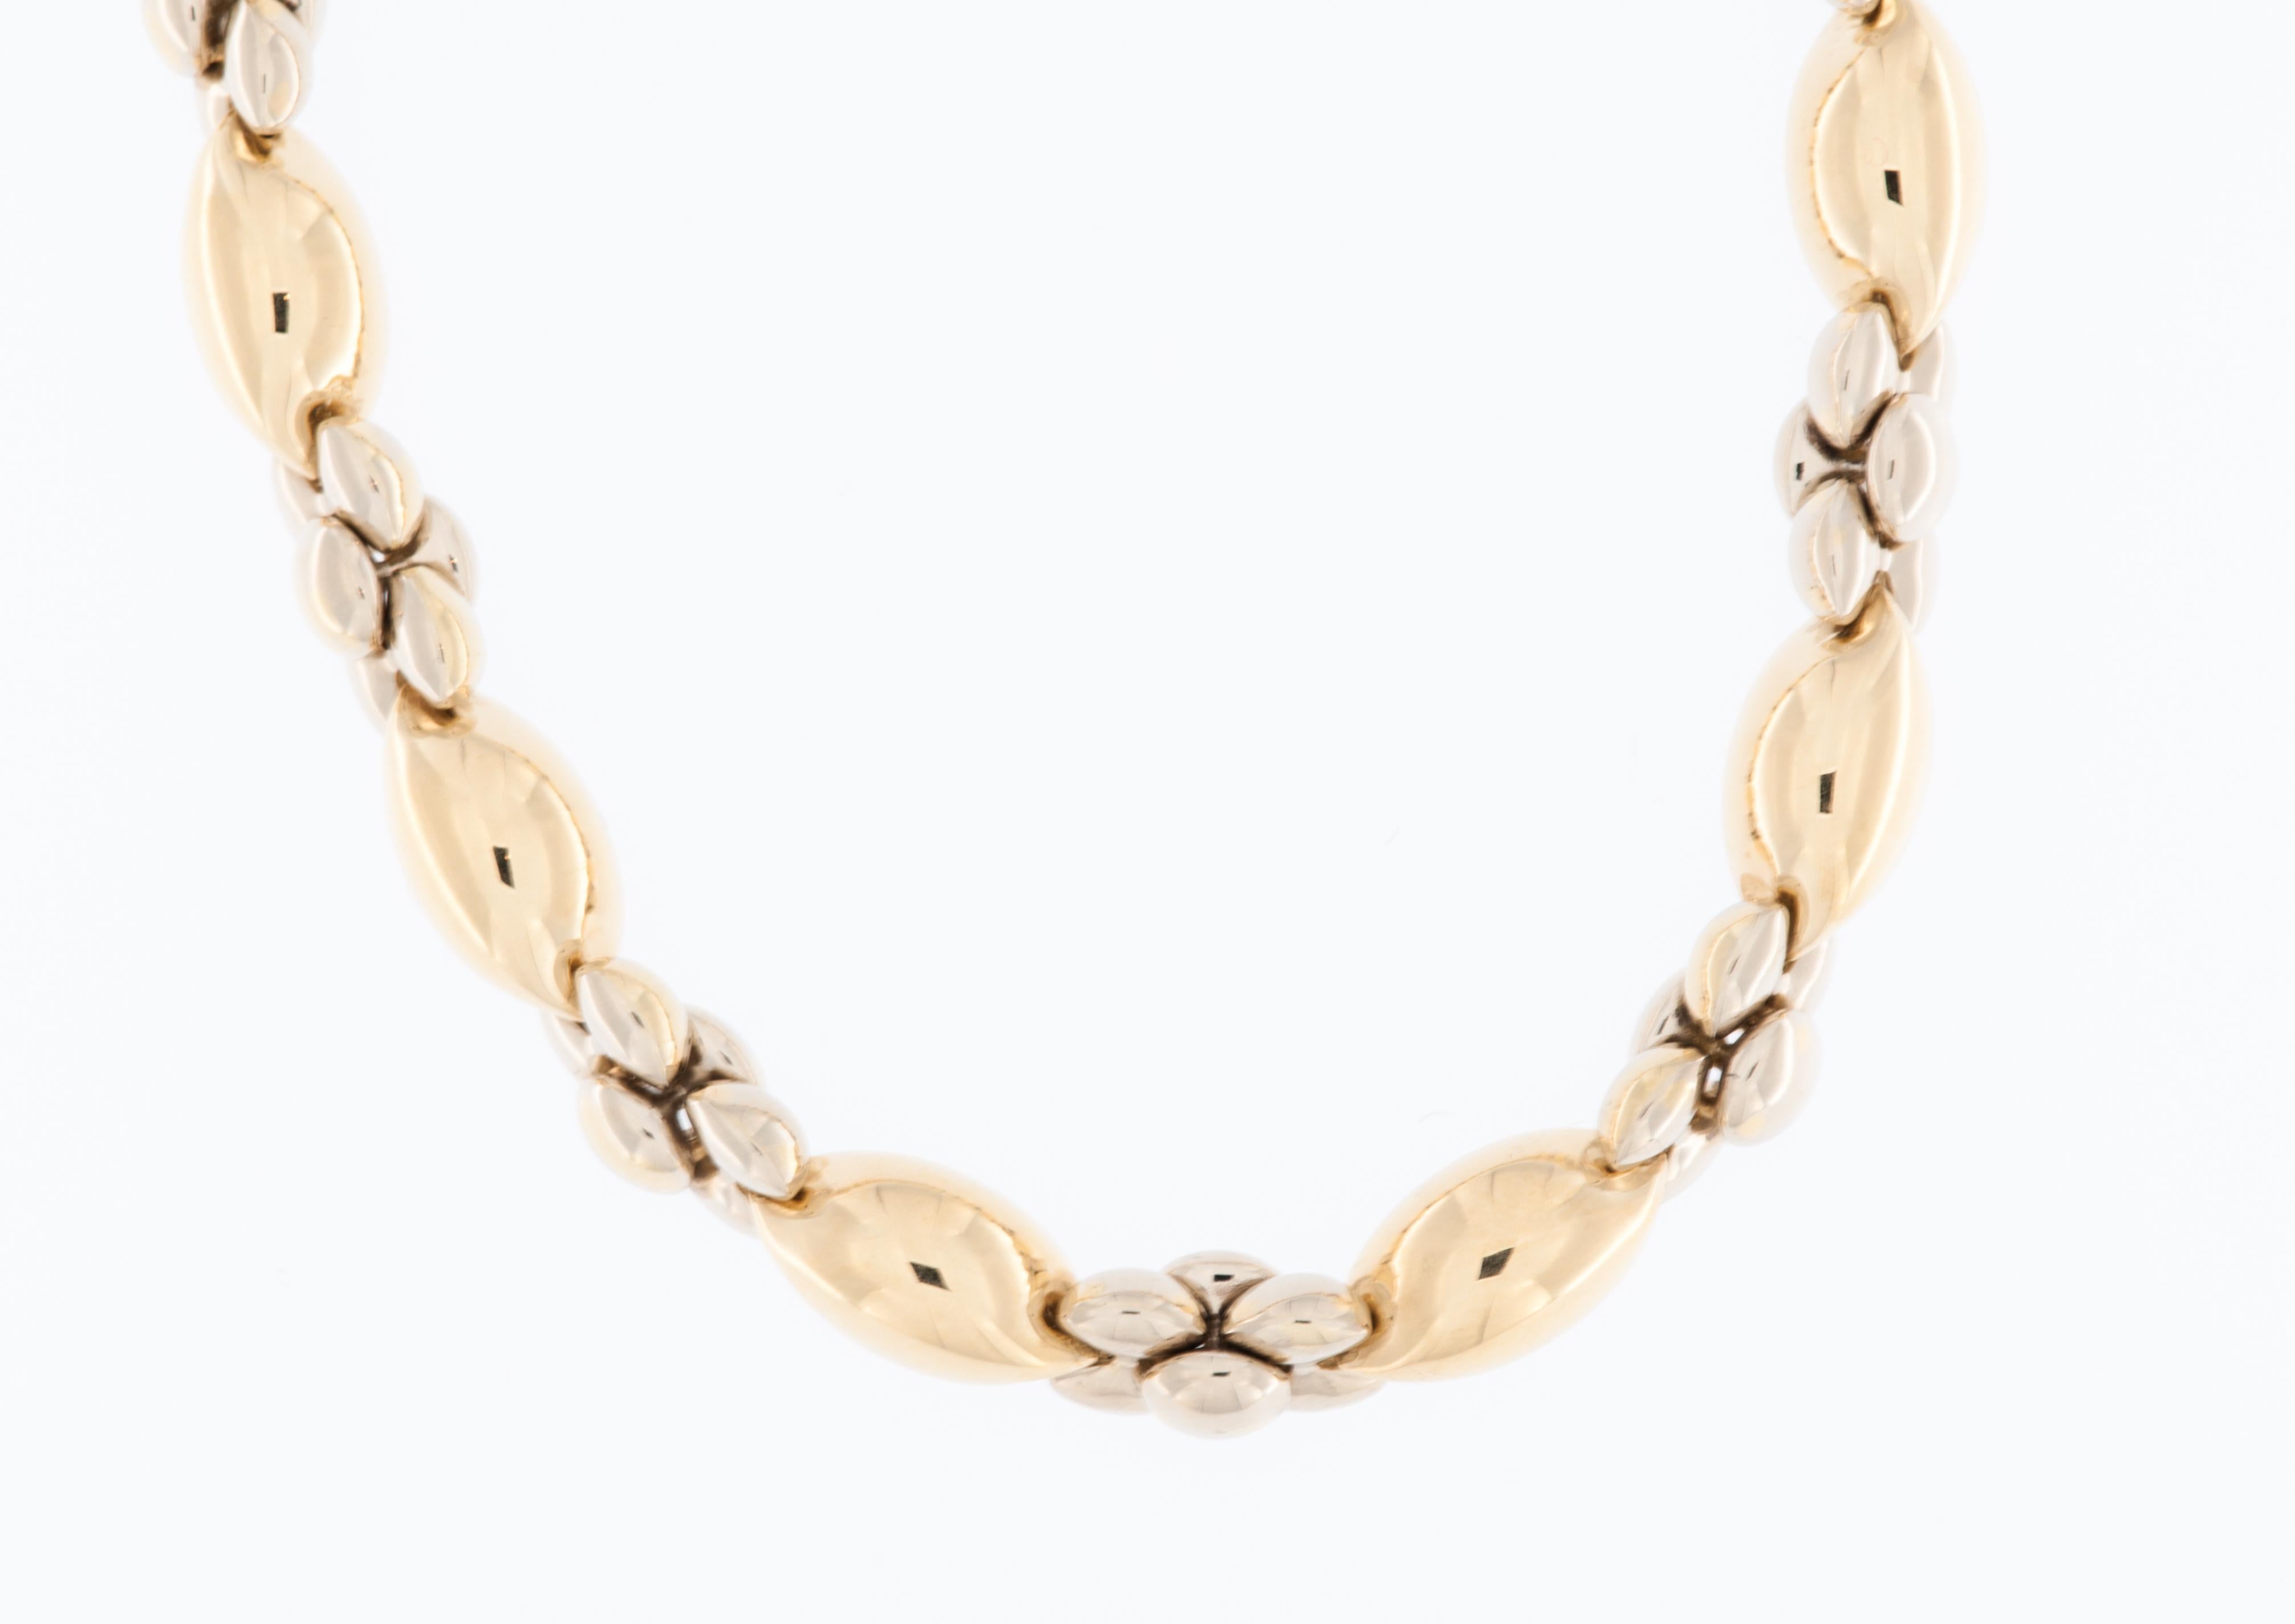 Le collier Spanish Vintage en or jaune 18kt est un bijou étonnant qui allie savoir-faire traditionnel et élégance intemporelle. 

Le collier est en or jaune 18 carats (18kt). Cet or de haute pureté est connu pour sa couleur riche et chaude et pour